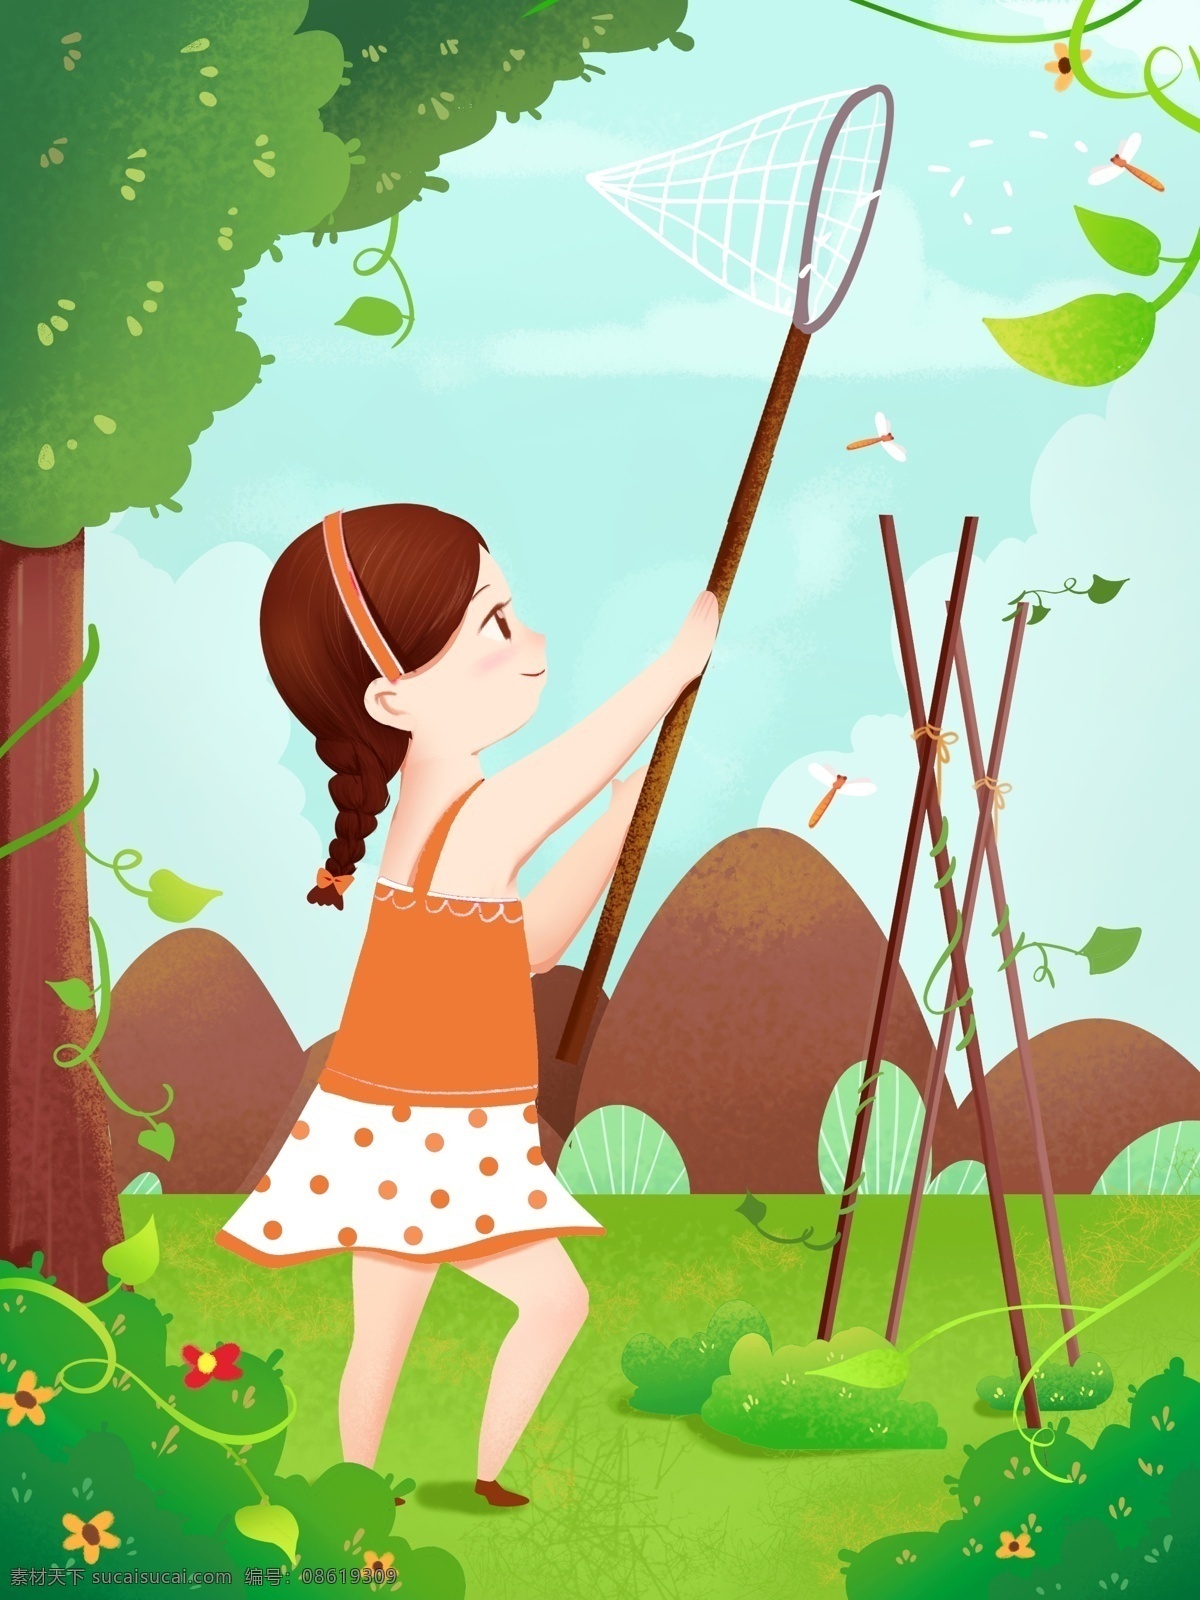 绿色 夏至 女孩 捉 蜻蜓 夏天 野营 玩耍 欢乐 快乐 节气 儿童 捉蜻蜓 童年 可爱 树木 清新 简约 植物